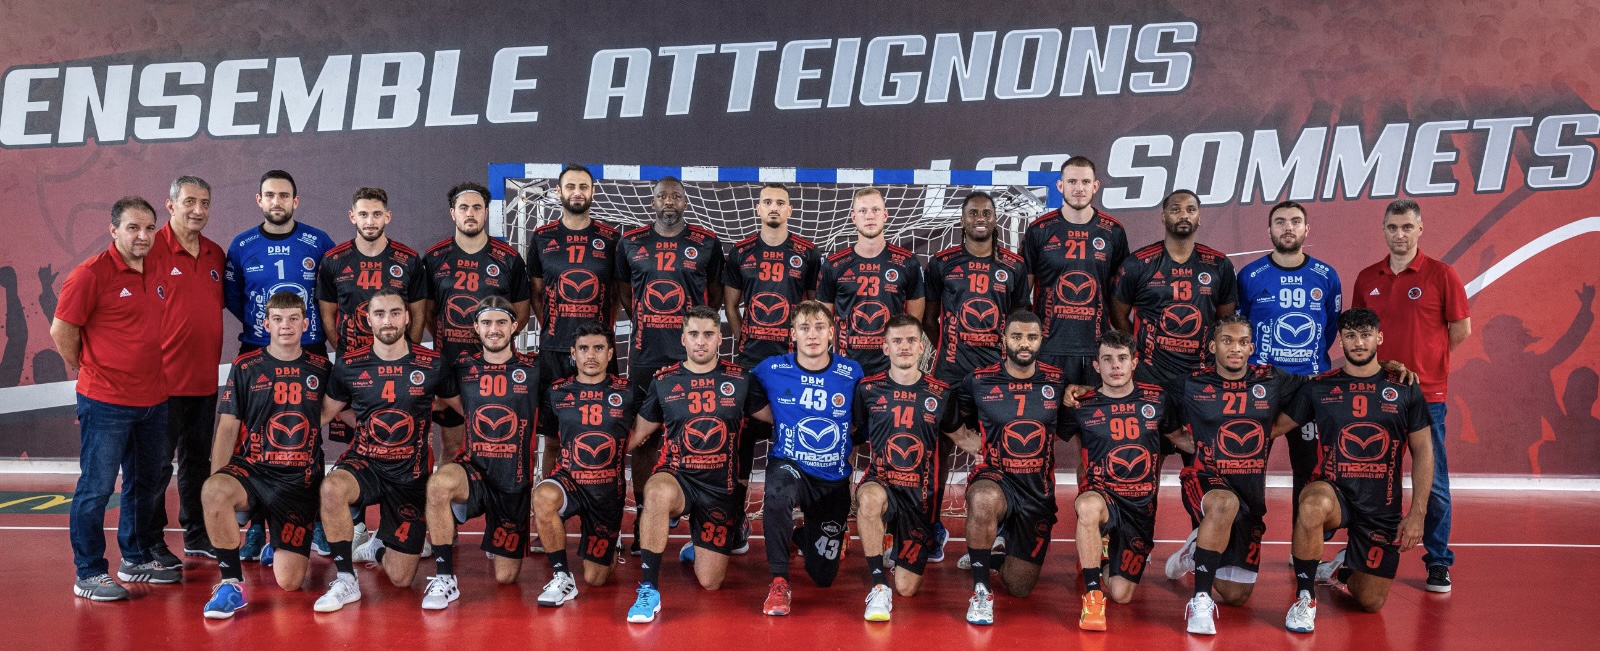 Le 8e Homme (Groupe de supporters officiel du PSG Handball)